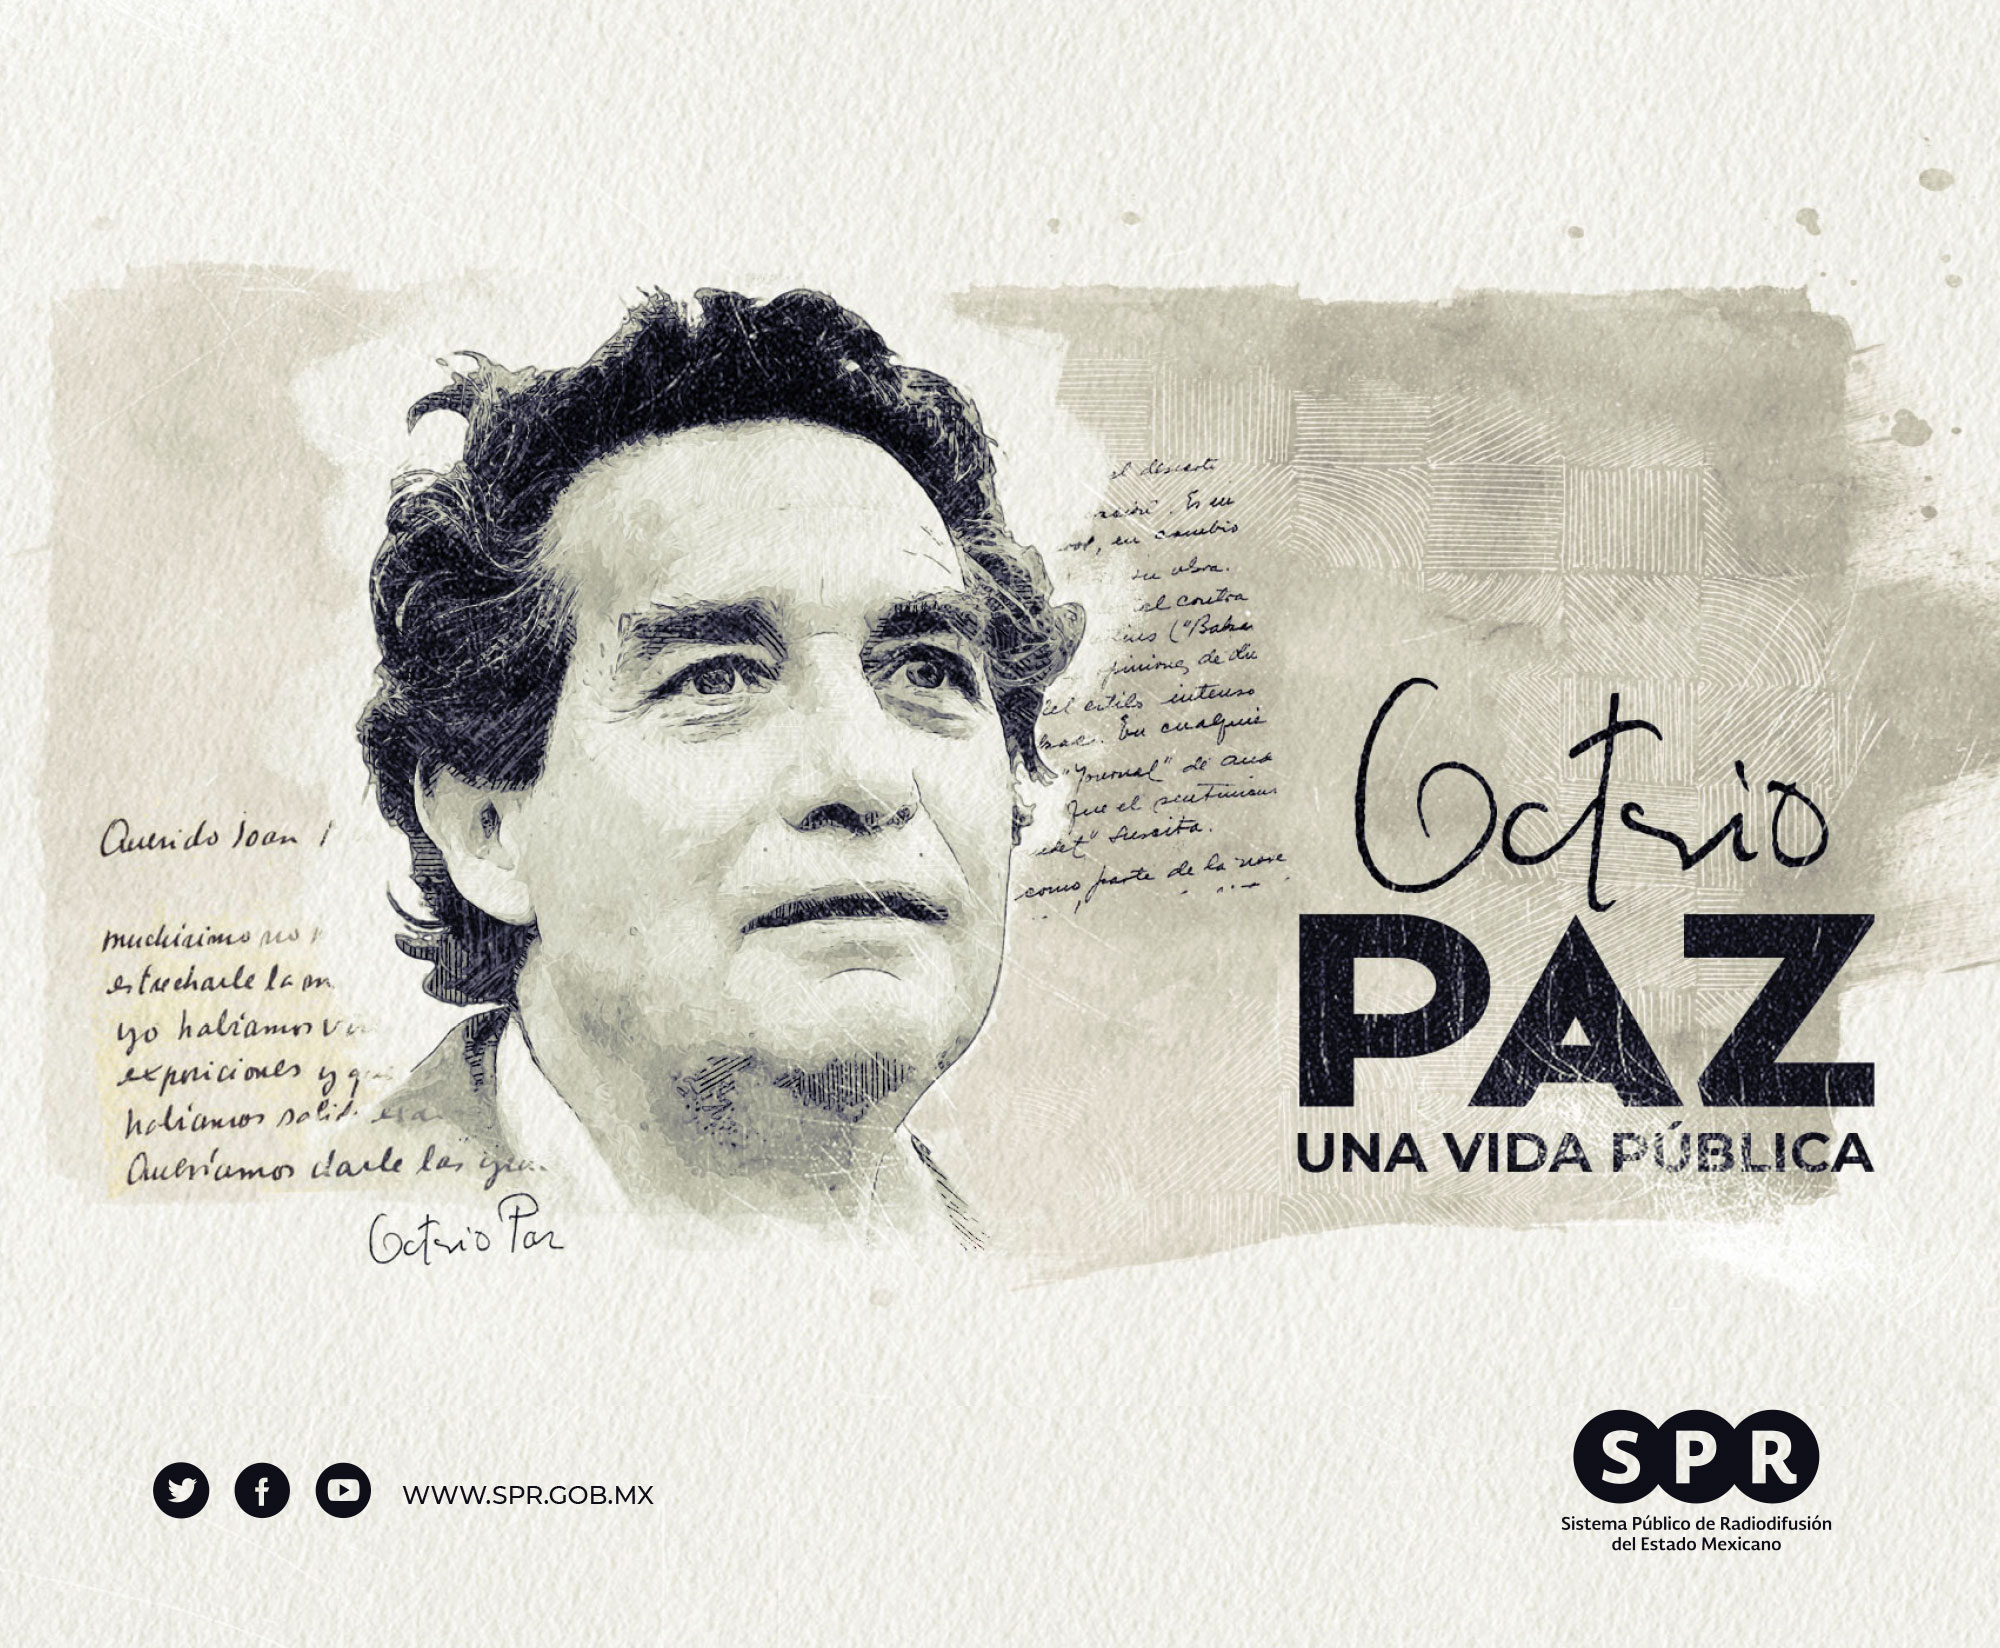 Canal Catorce del SPR estrenará el documental “Octavio Paz. Una vida pública”, el 19 de abril, en el marco de su 25 aniversario luctuoso.